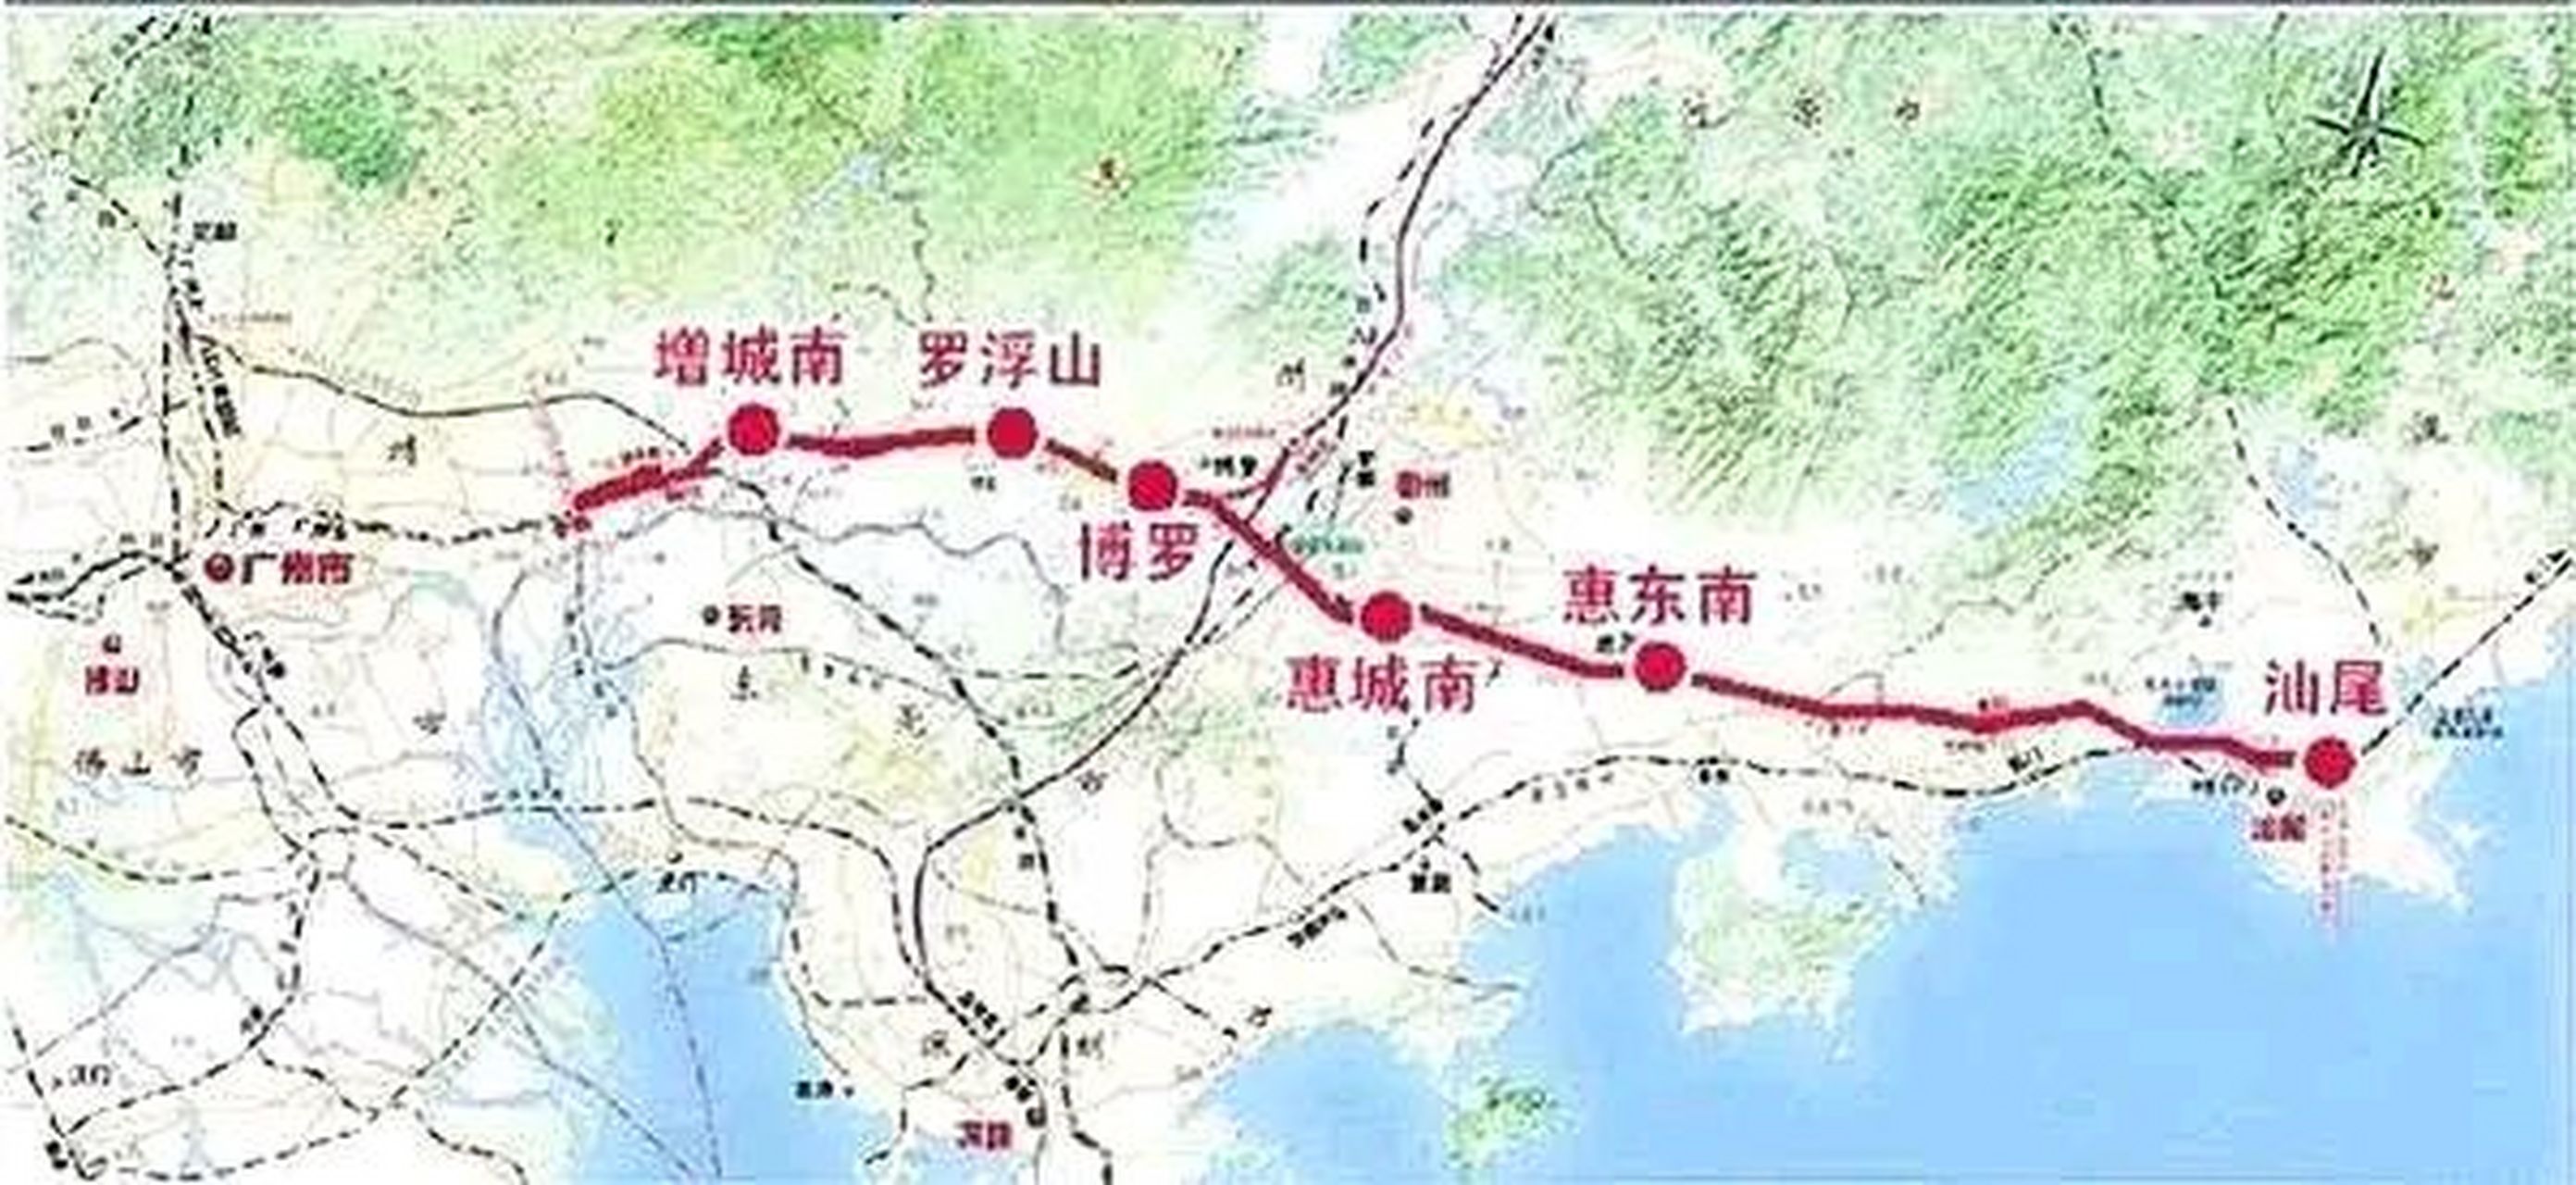 广汕高铁从广州新塘站引出,途经惠州,深汕合作区